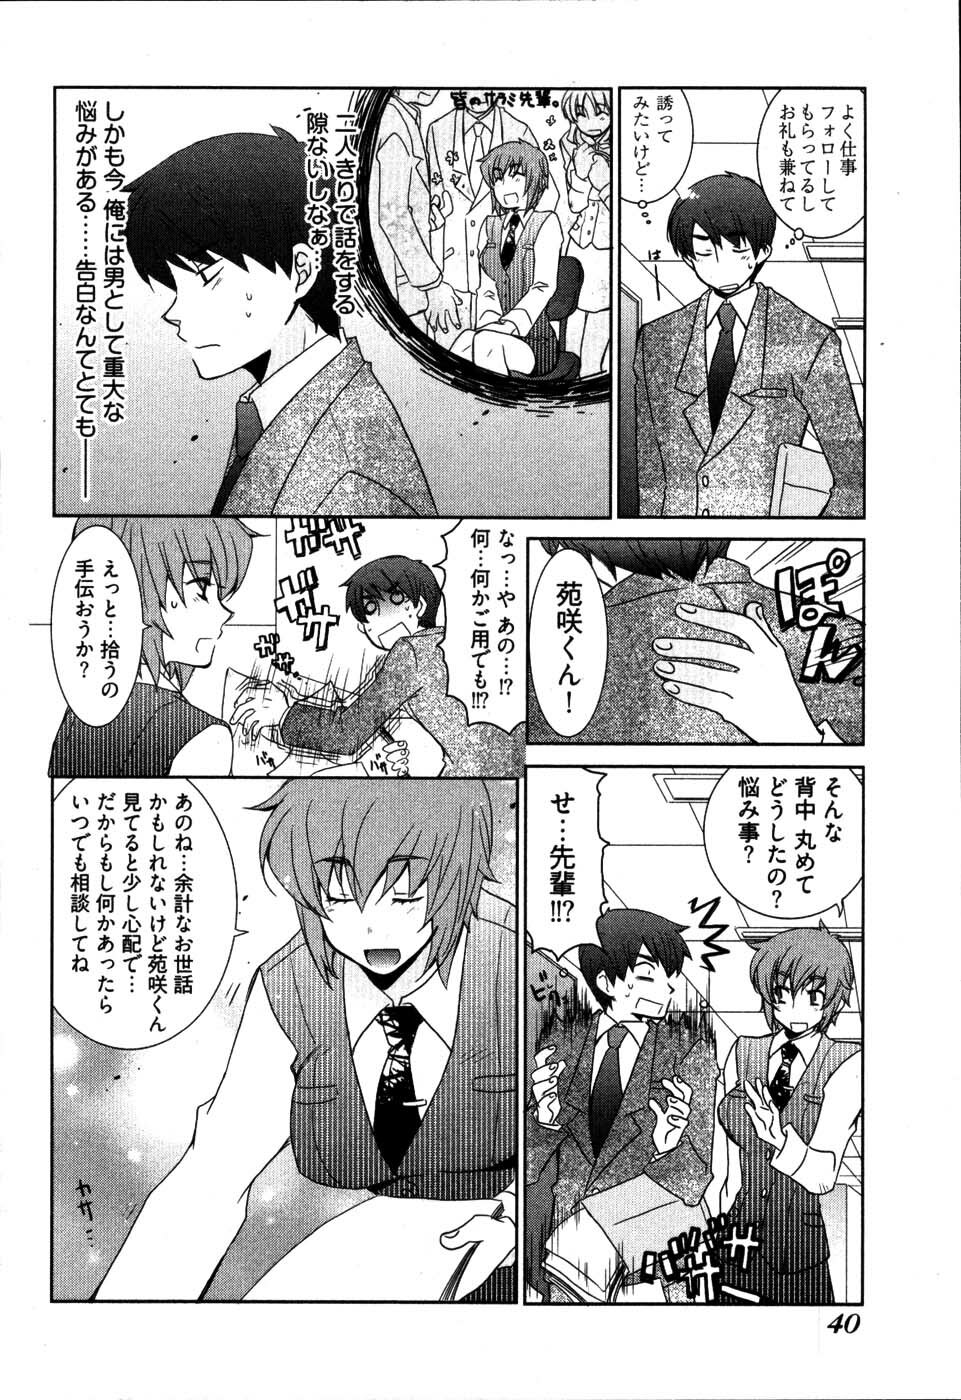 [Mutsuki Nozomi] Ame Nochi Arashi, Tokoro ni Yori Koi? page 44 full